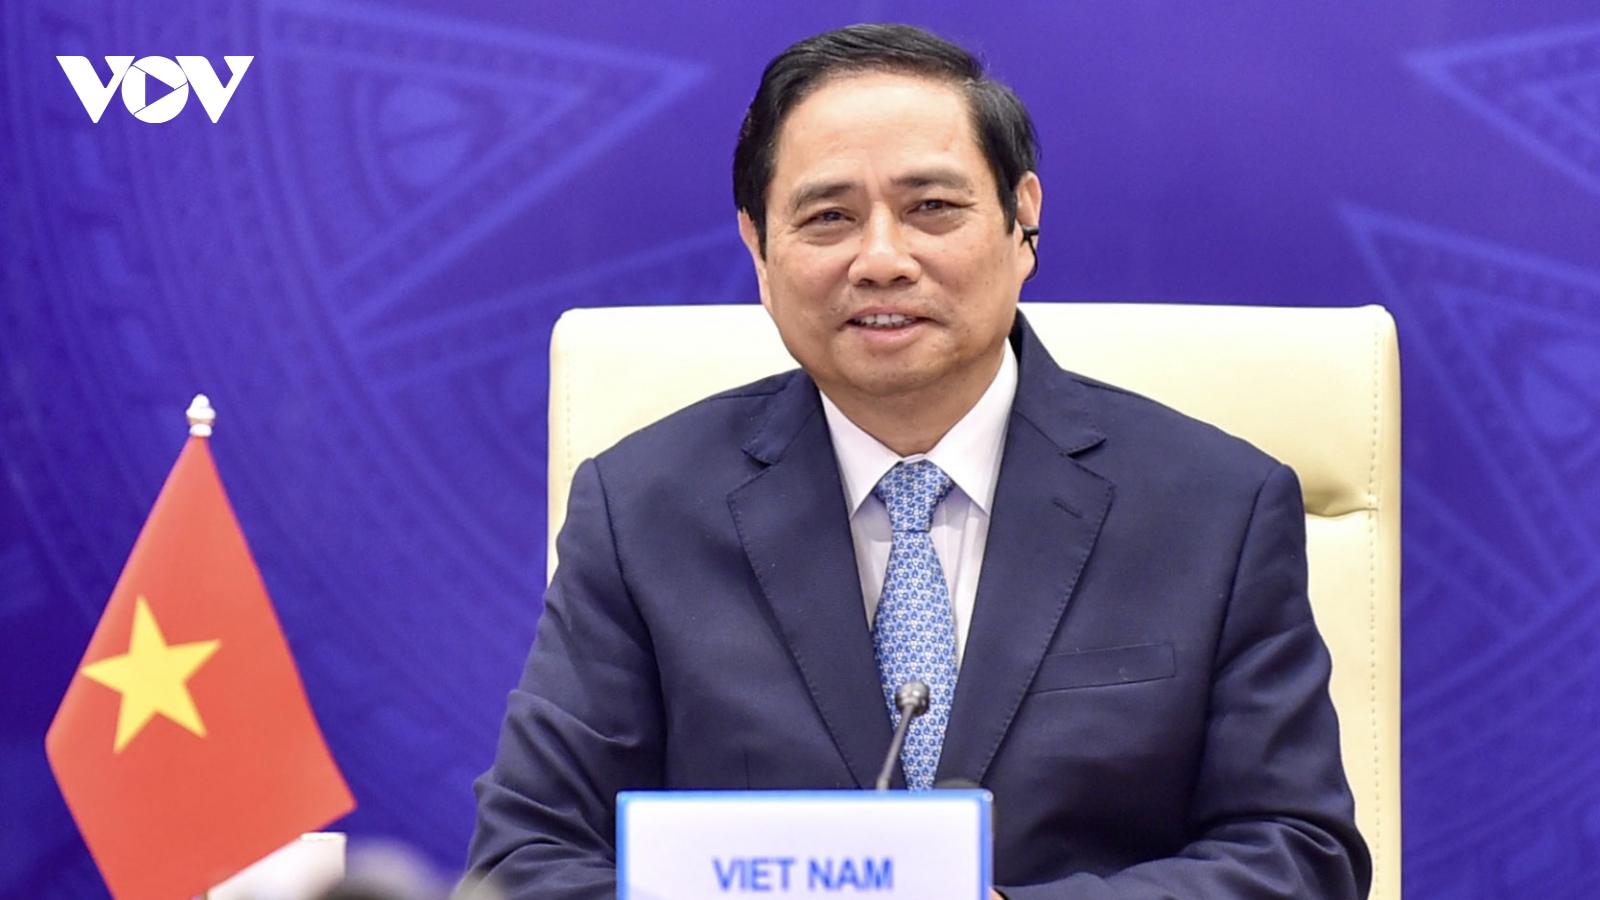 Phát biểu của Thủ tướng tại Hội nghị Thượng đỉnh Hợp tác Tiểu vùng Mekong mở rộng